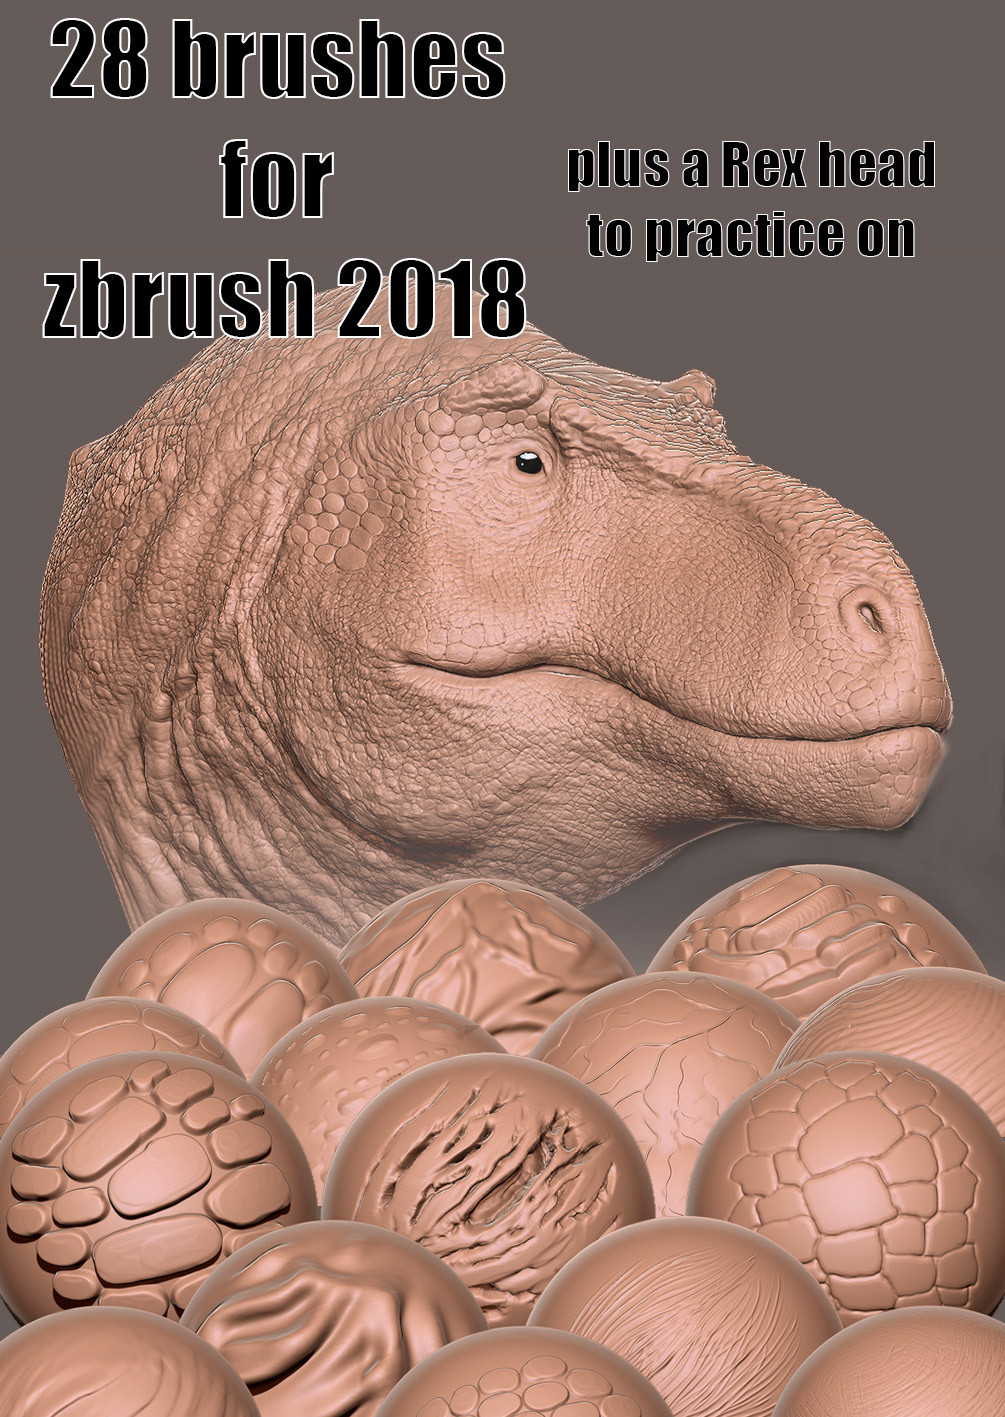 zbrush 2018 customize